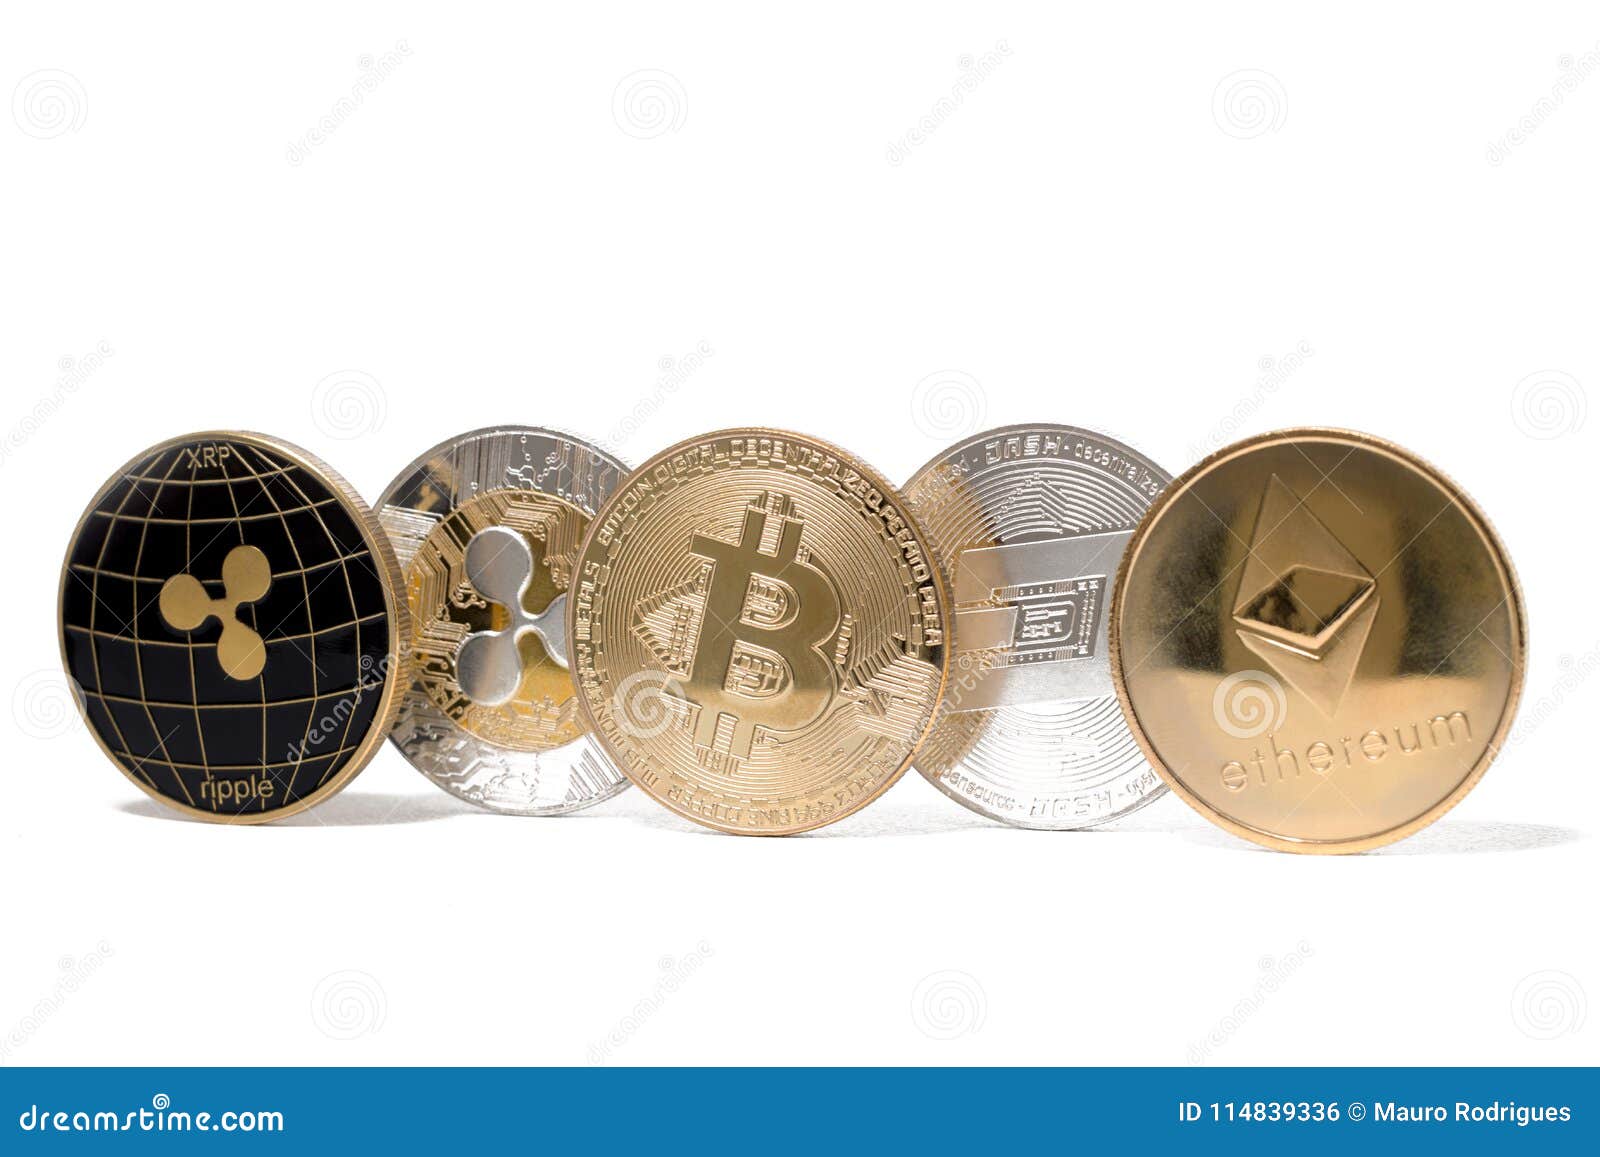 shin crypto coin